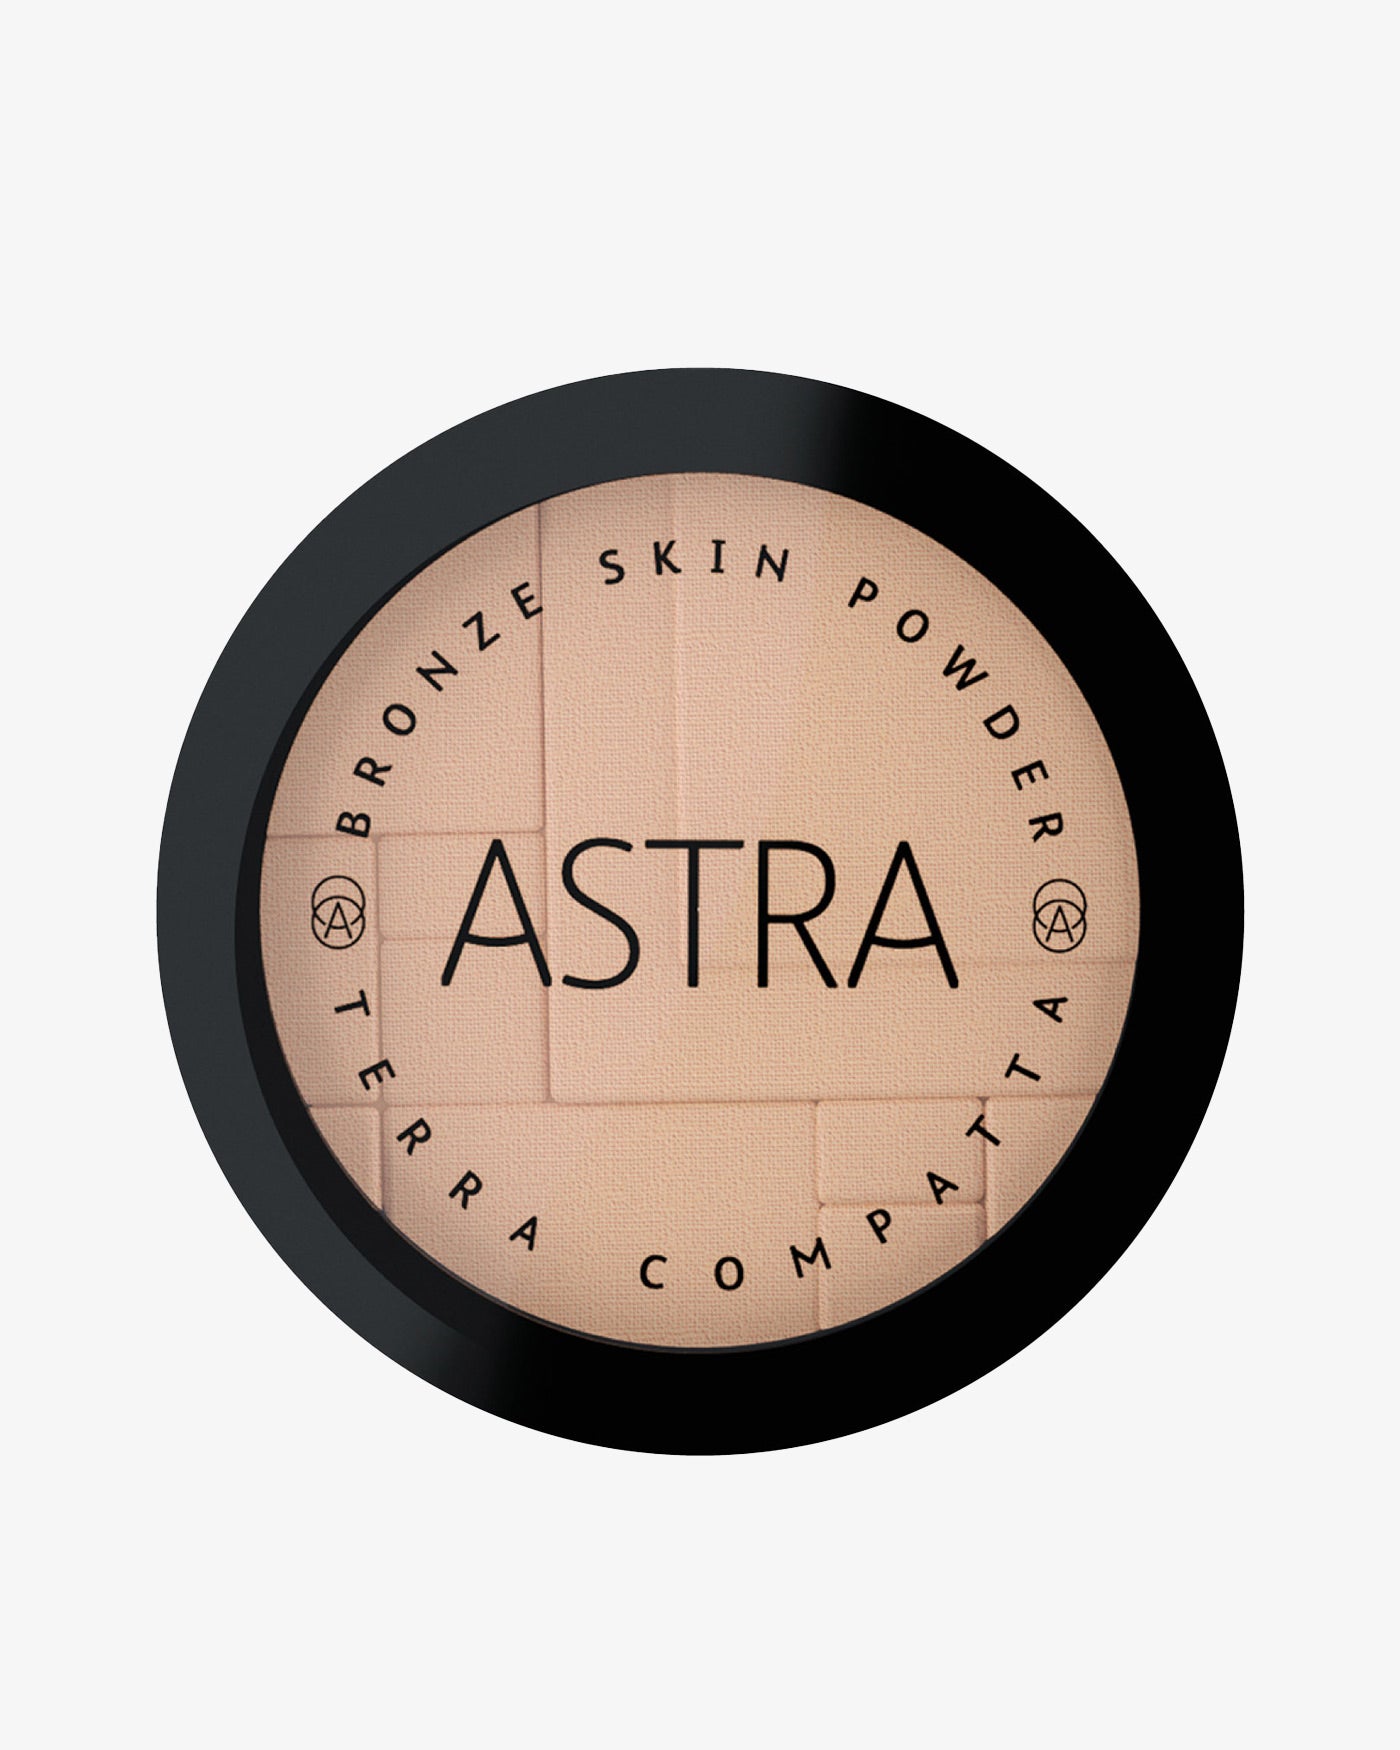 BRONZE SKIN POWDER - Colorazioni in Promozione - All Products - Astra Make-Up